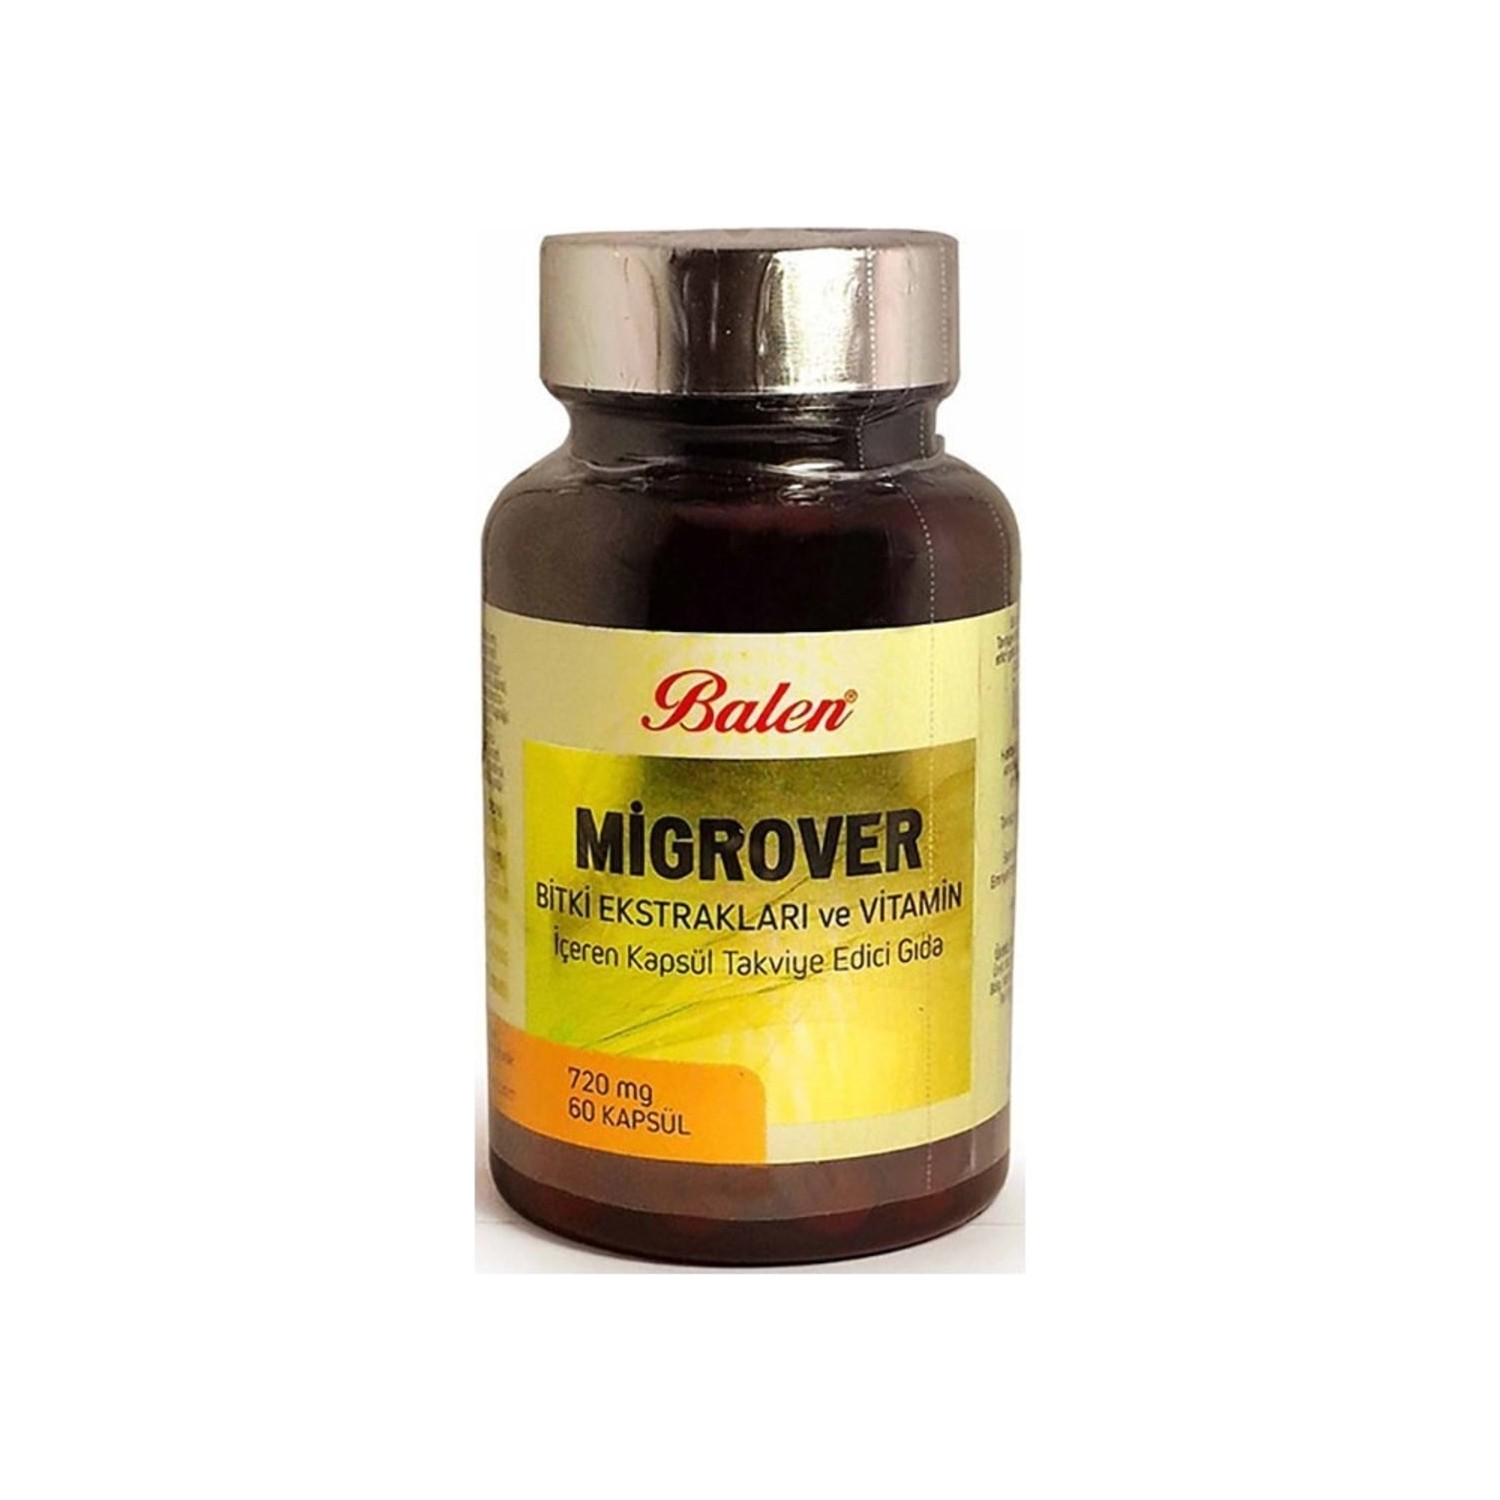 Капсулы Balen Migrover, содержащие растительные экстракты и витамины, 60 капсул, 720 мг improve sleep melatonin capsules vitamin b6